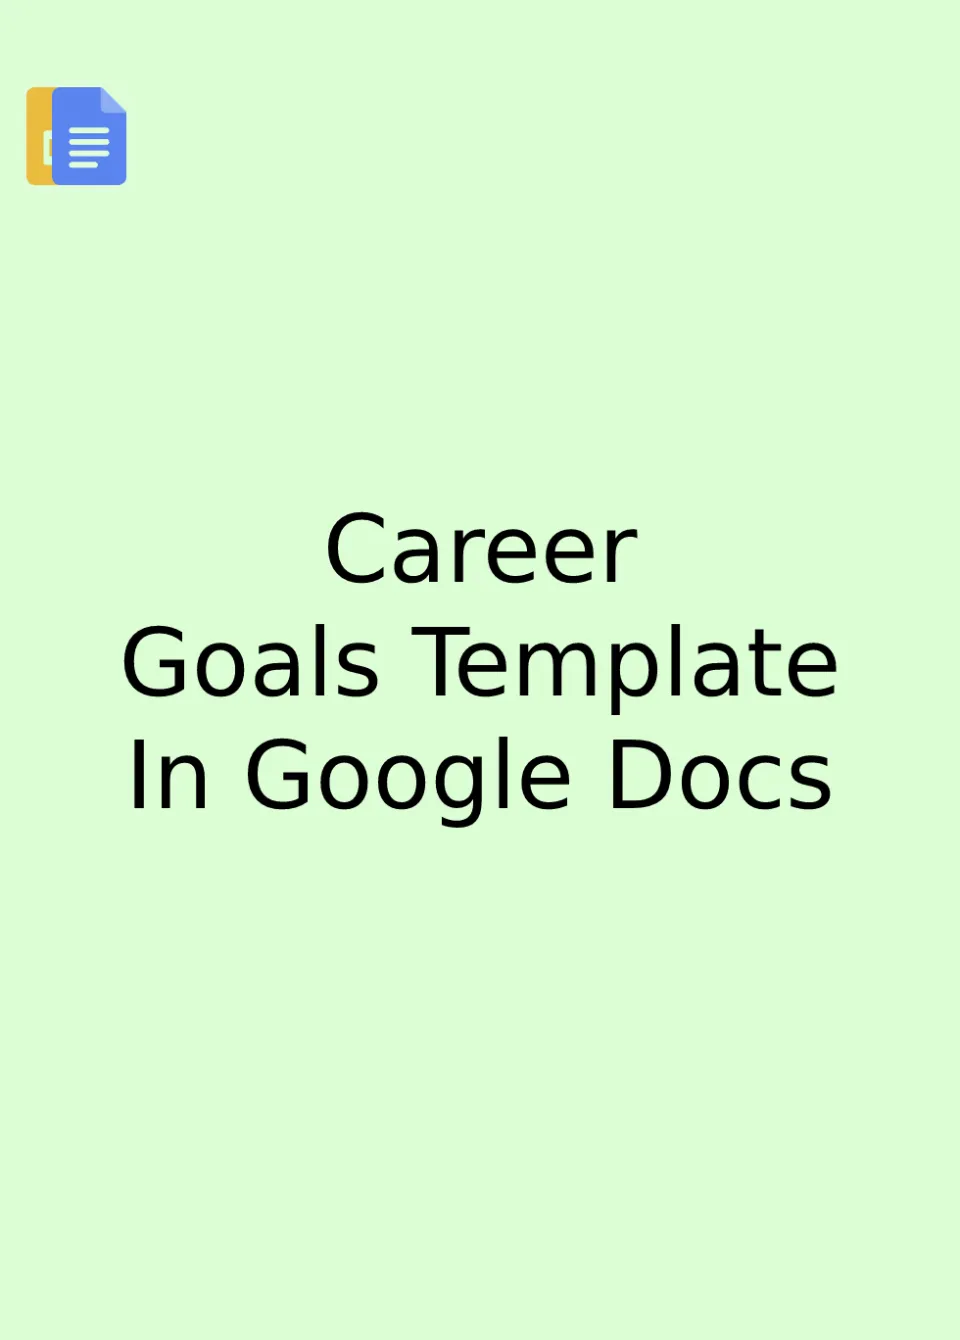 Career Goals Template Google Docs